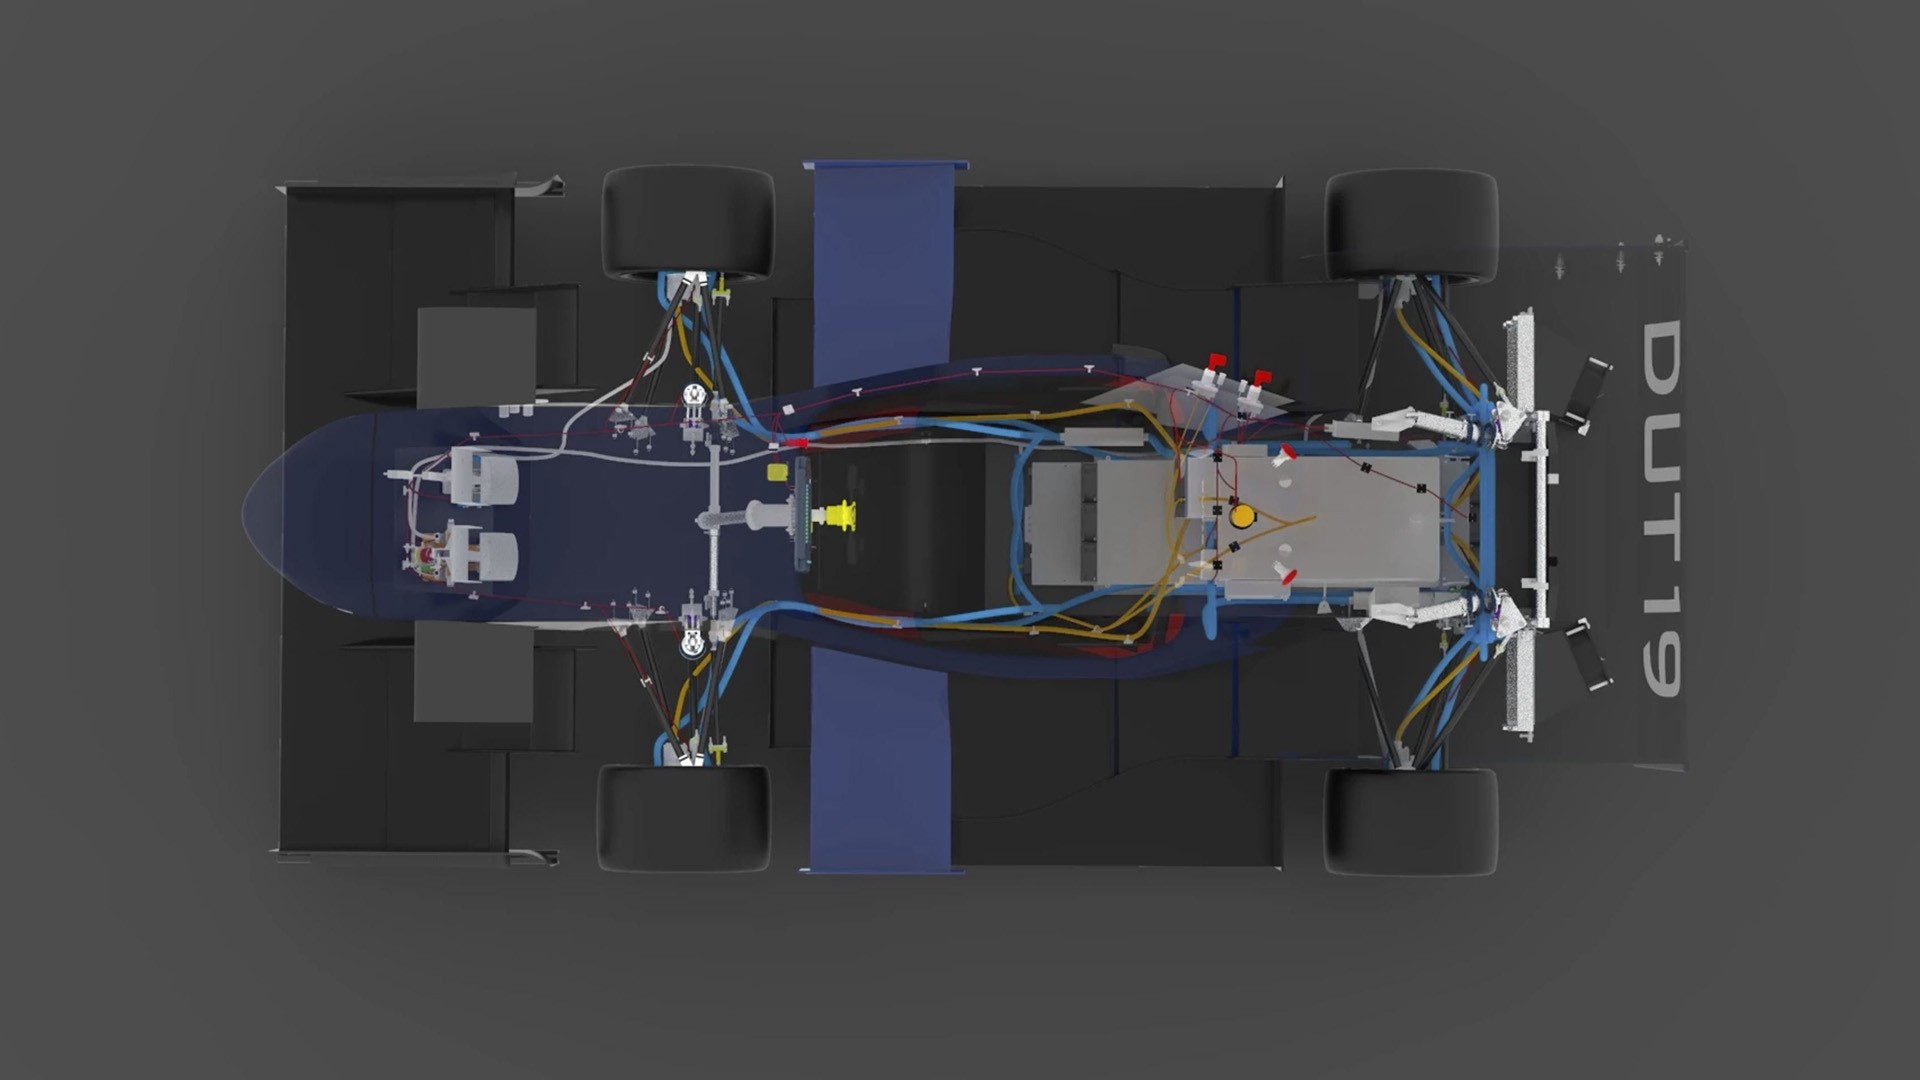  Schéma du circuit électrique d’une voiture de Formule 1 développé par la Delft University of Technology